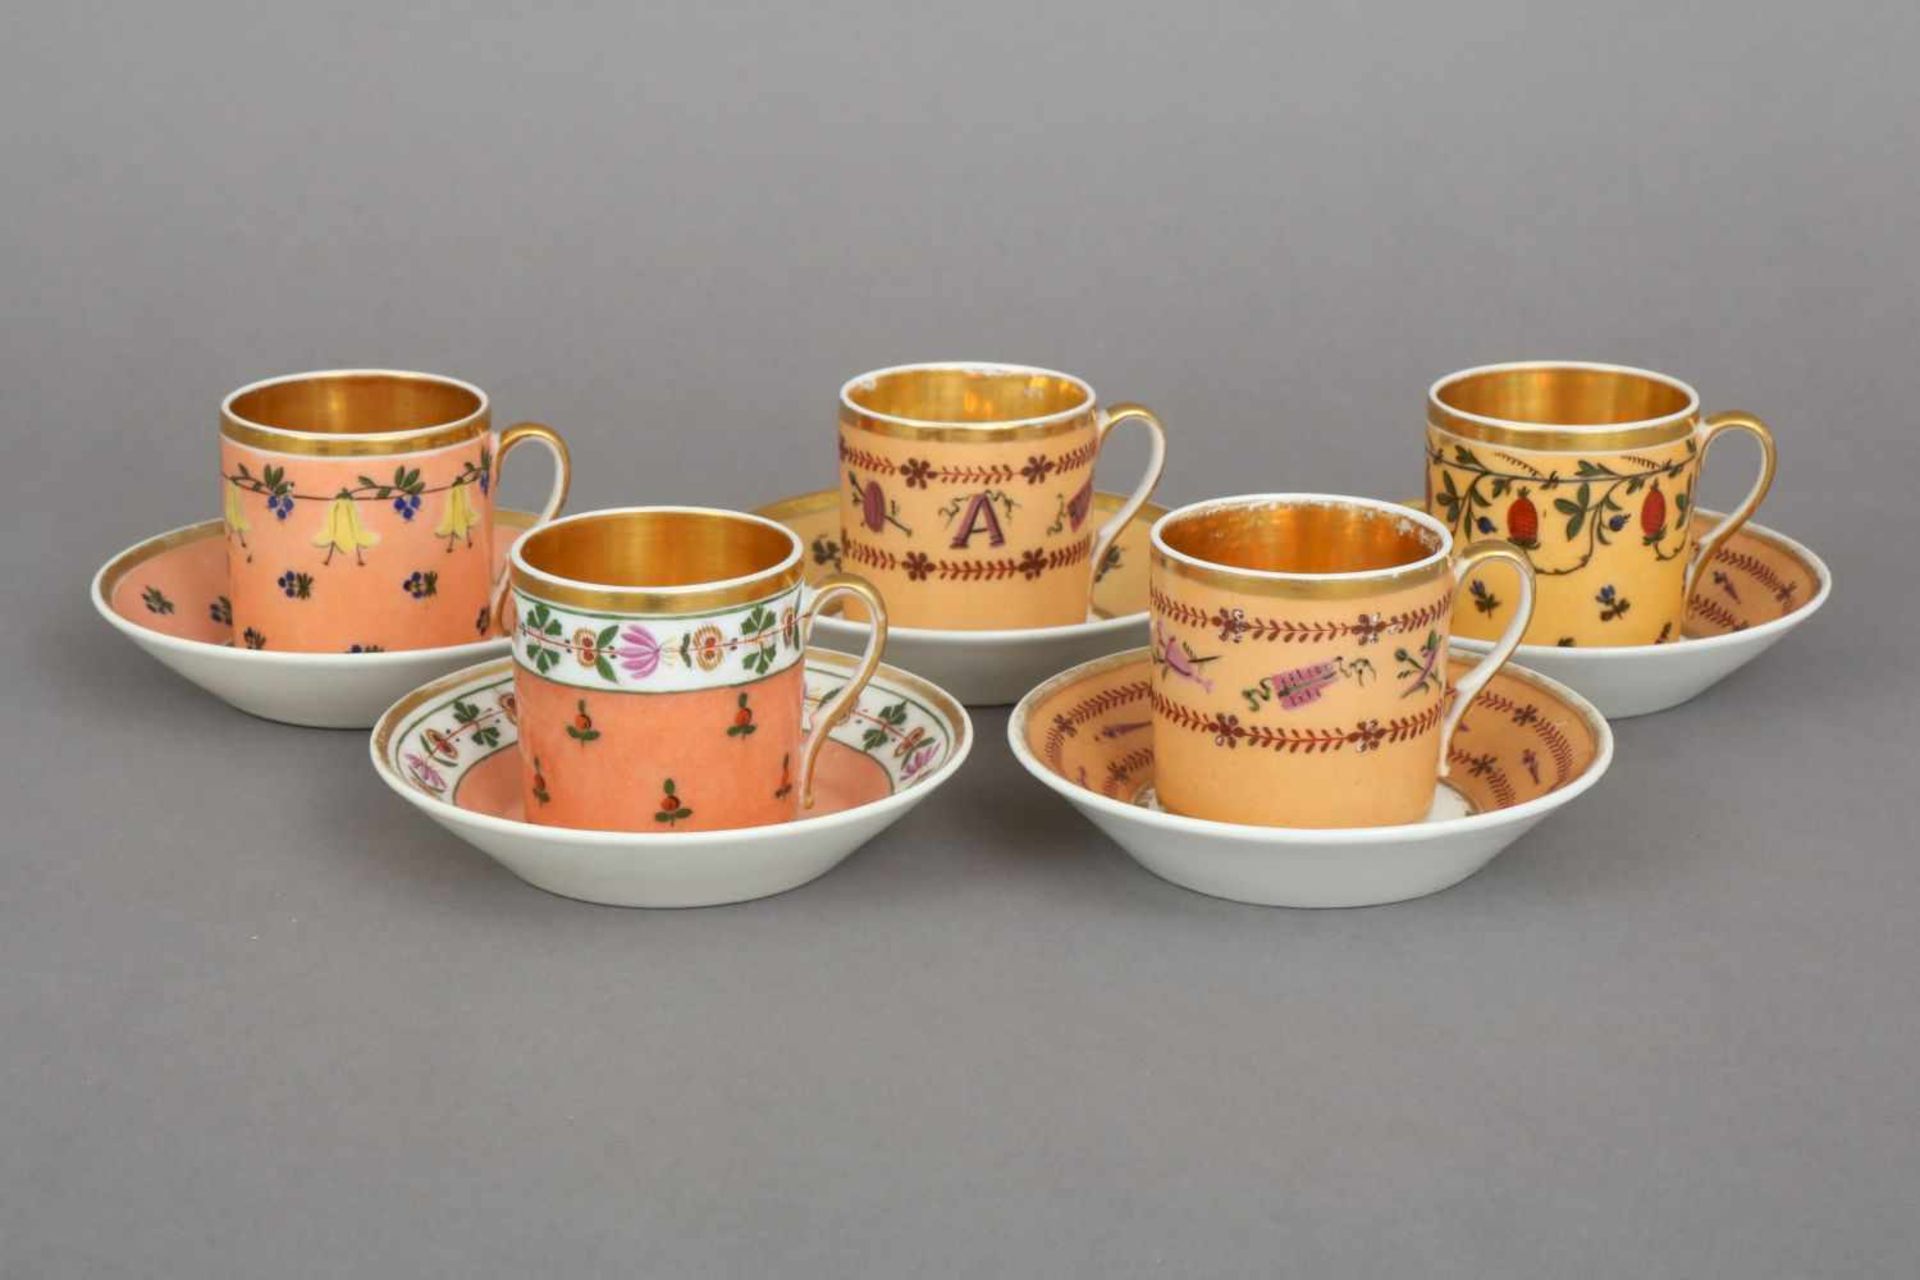 5 Tassen des Biedermeierunbekannte Manufaktur, um 1820, zylindrische Tassen mit Ohrengriffen,